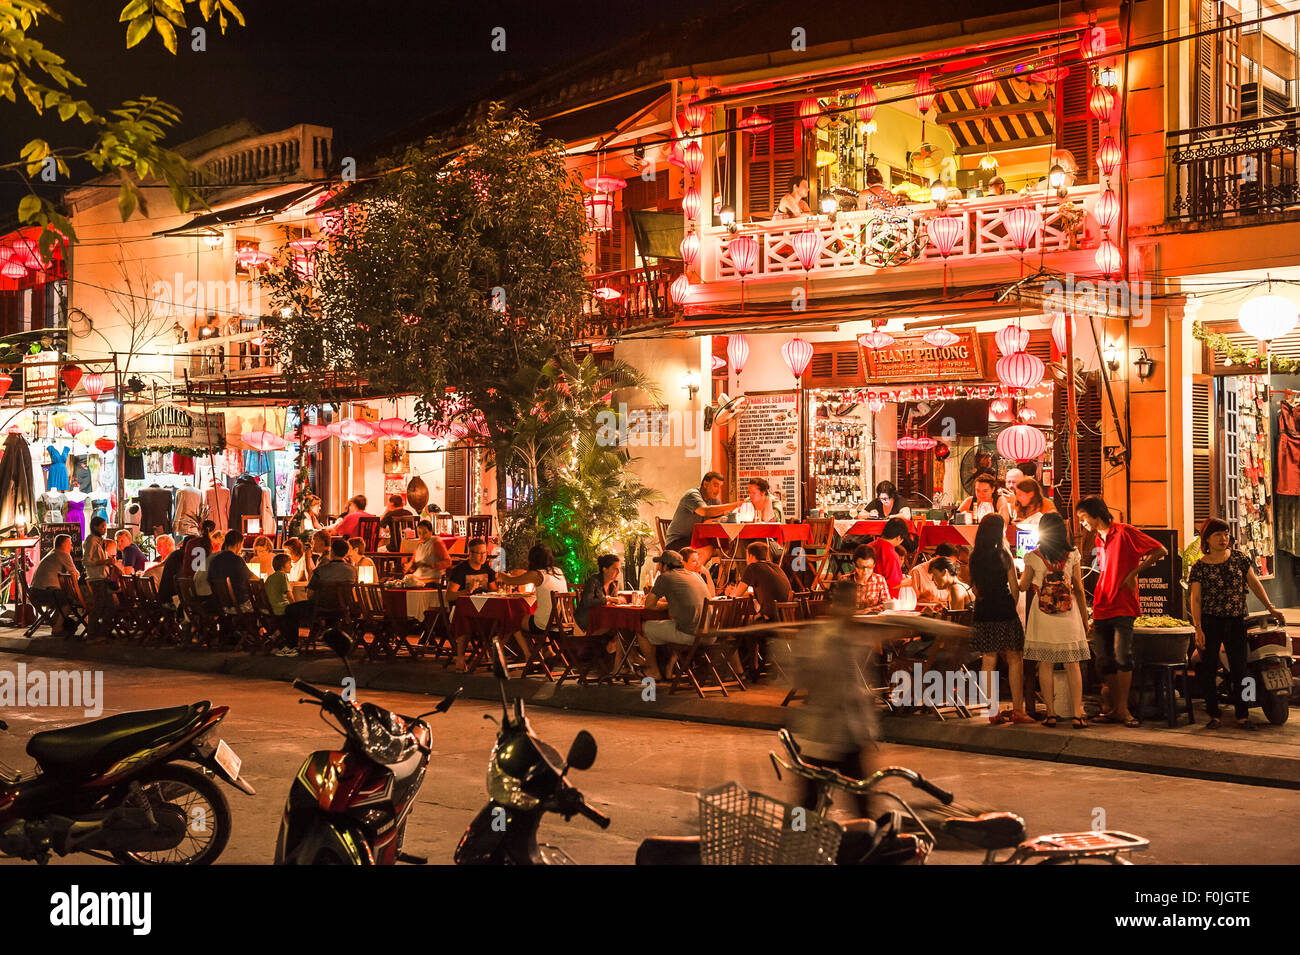 Hoi An bar de nuit, les touristes la nuit une scène dans la vieille ville de tourisme, Hoi An, Vietnam central. Banque D'Images